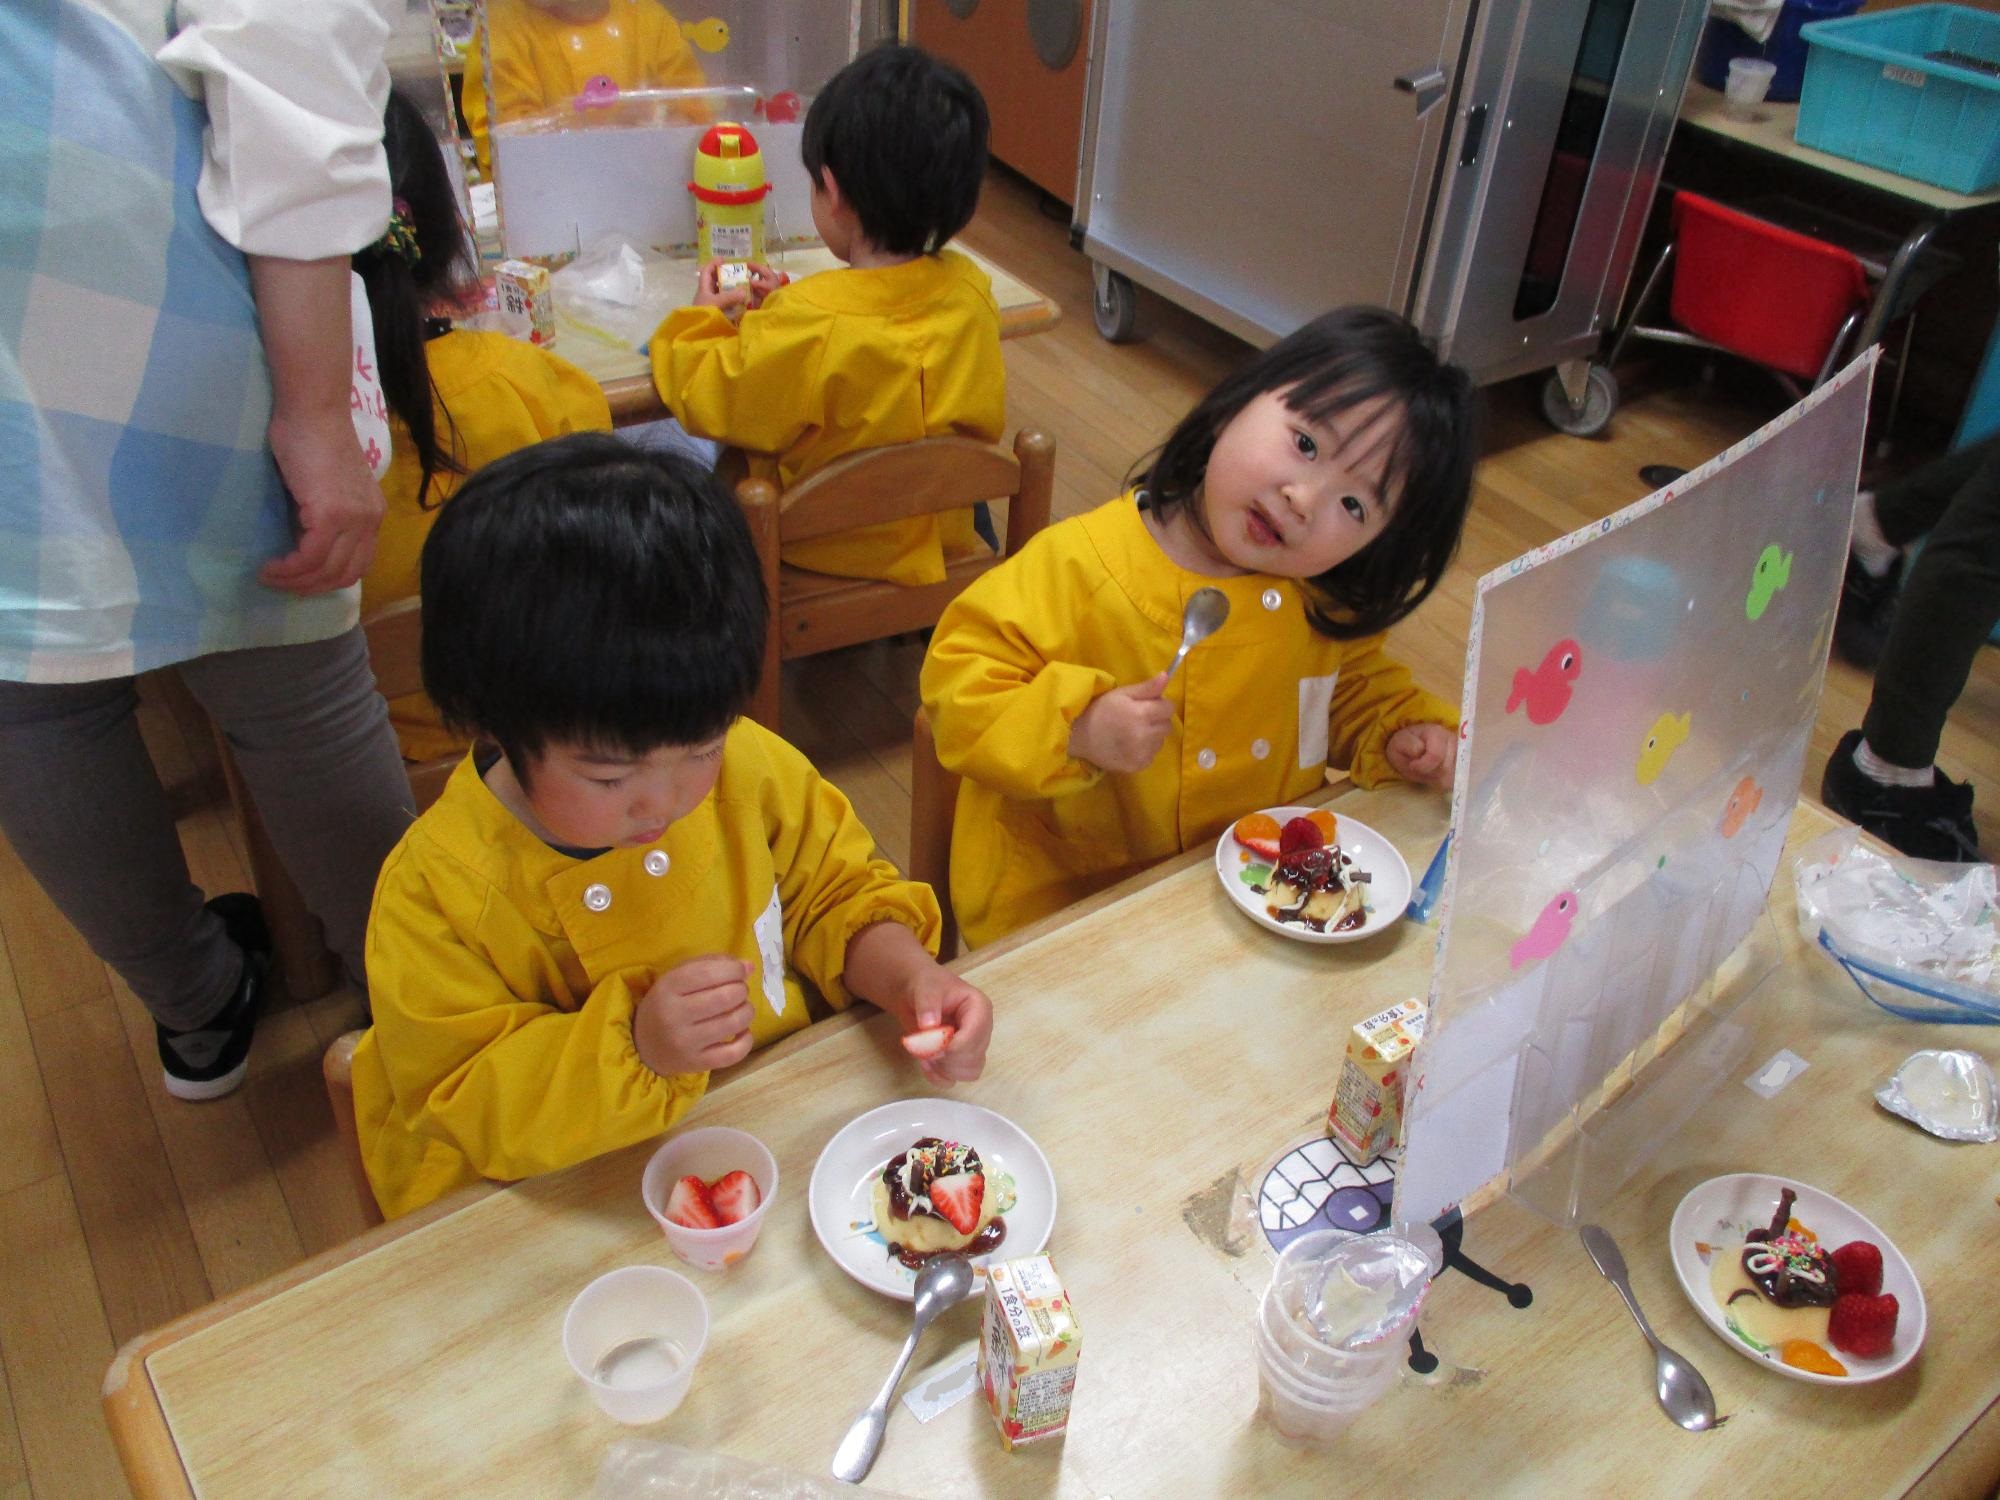 クッキングパーティーでプリンアラモードを作り食べるつぼみ2組の子ども達です。